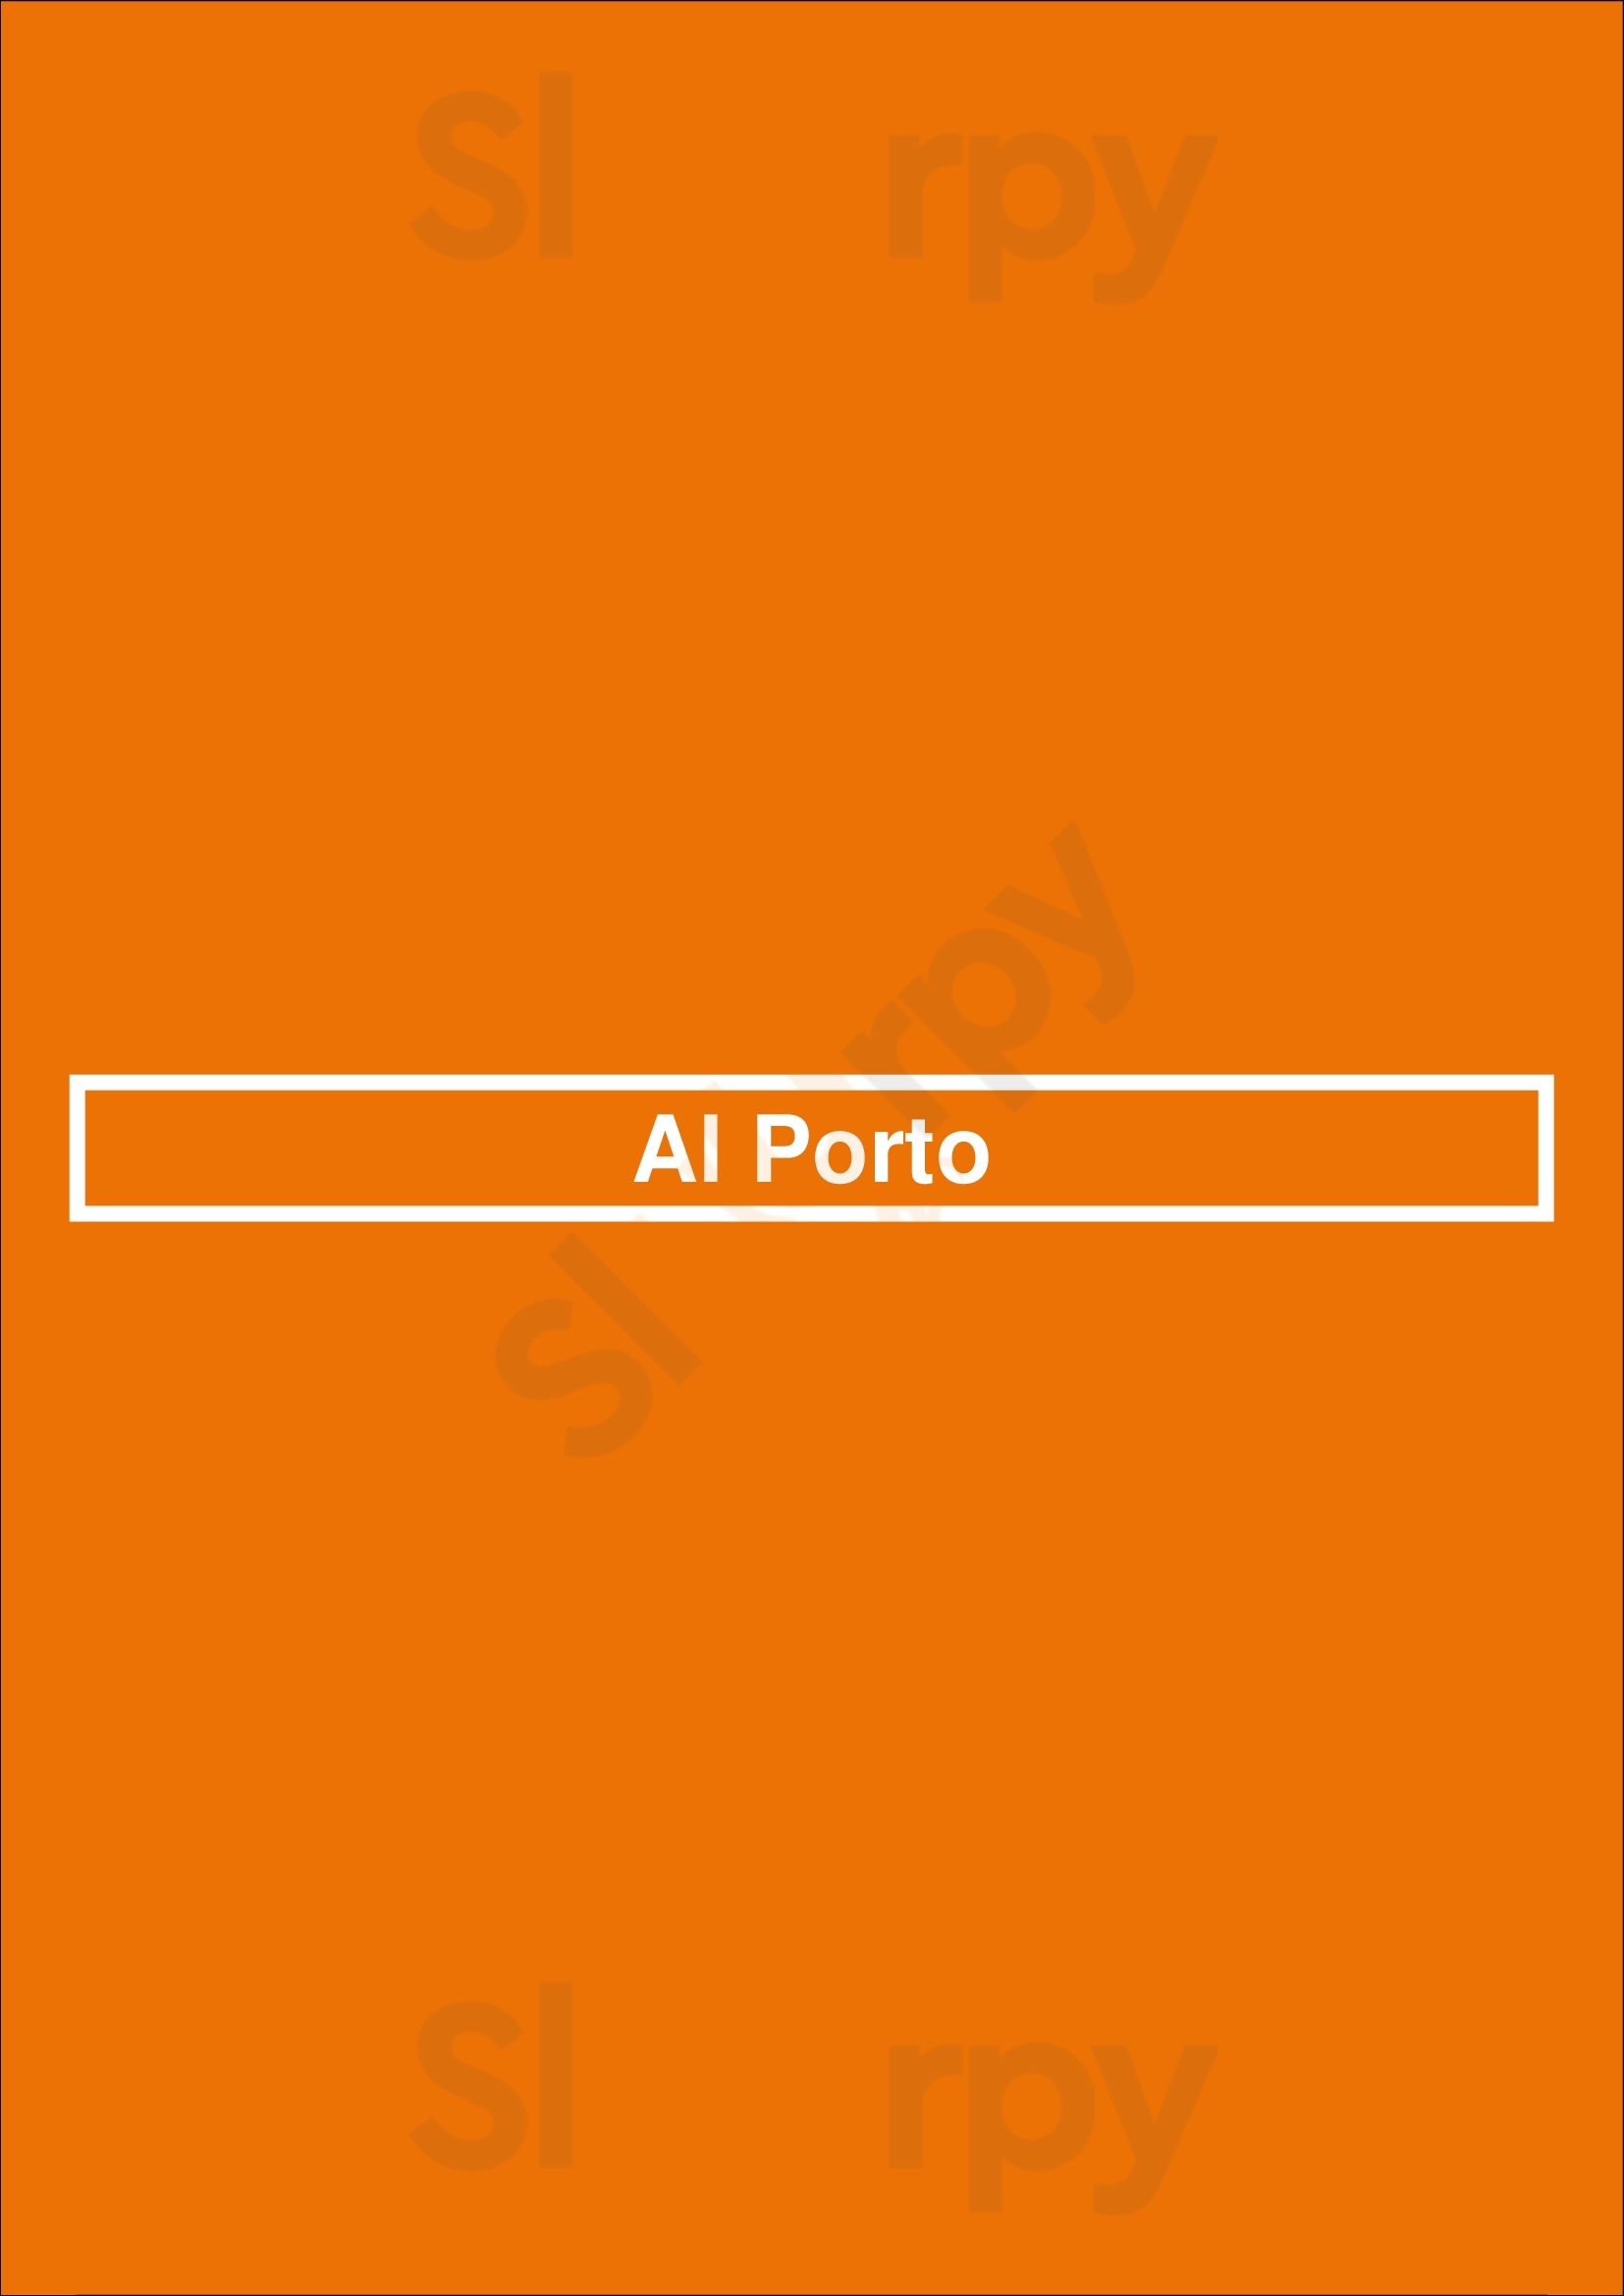 Al Porto Porto Menu - 1